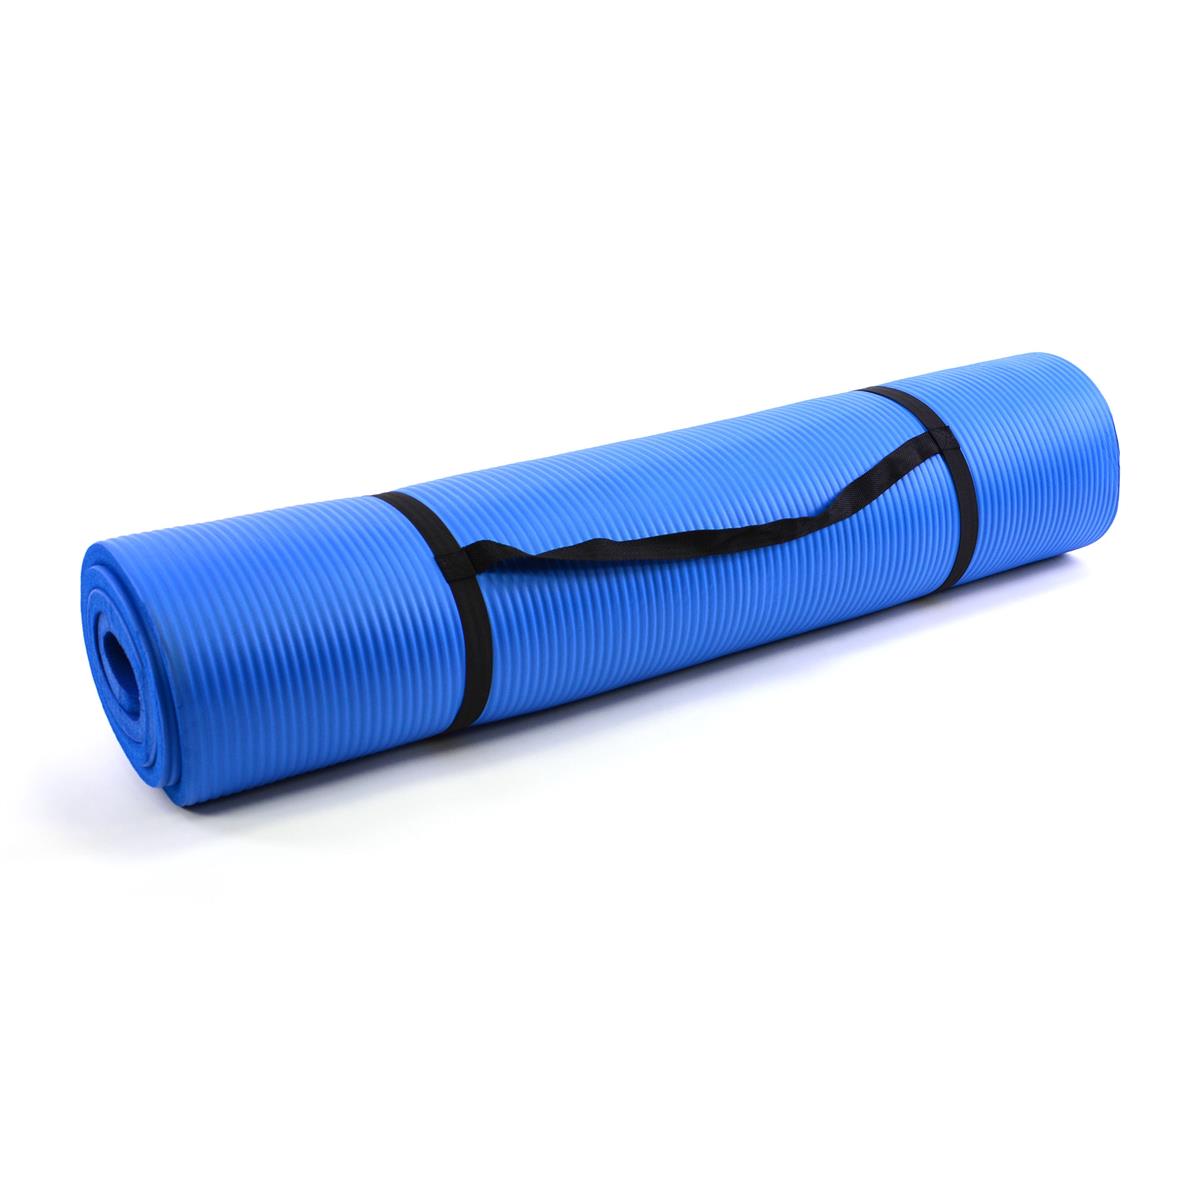 Yogamatte Gymnastikmatte Fitnessmatte 190 x 102 x 1,5 cm blau schadstofffrei